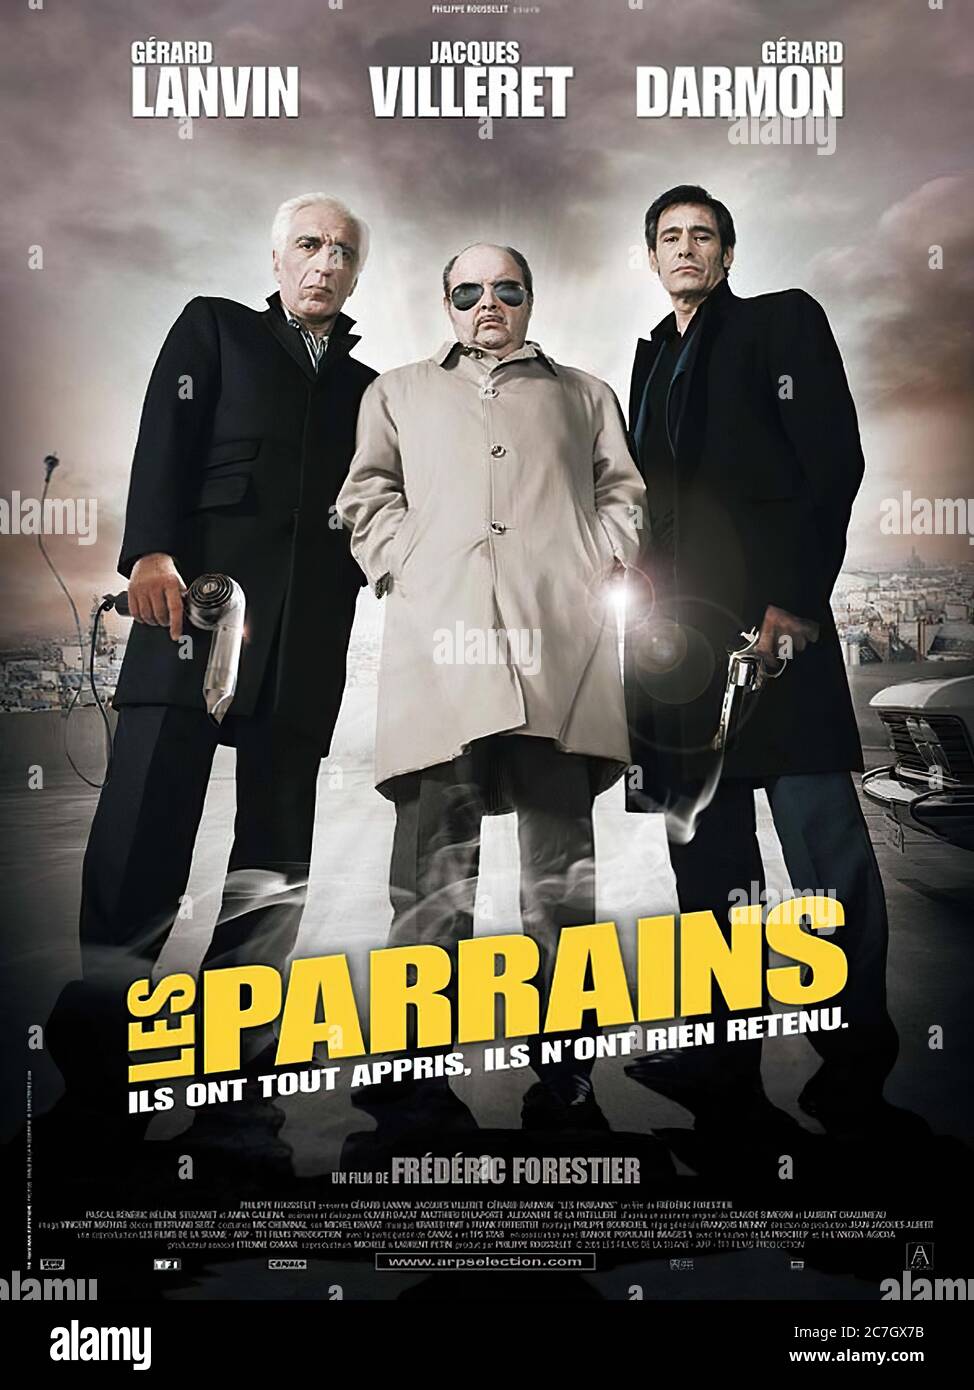 Les Parrains - Movie Poster Stock Photo